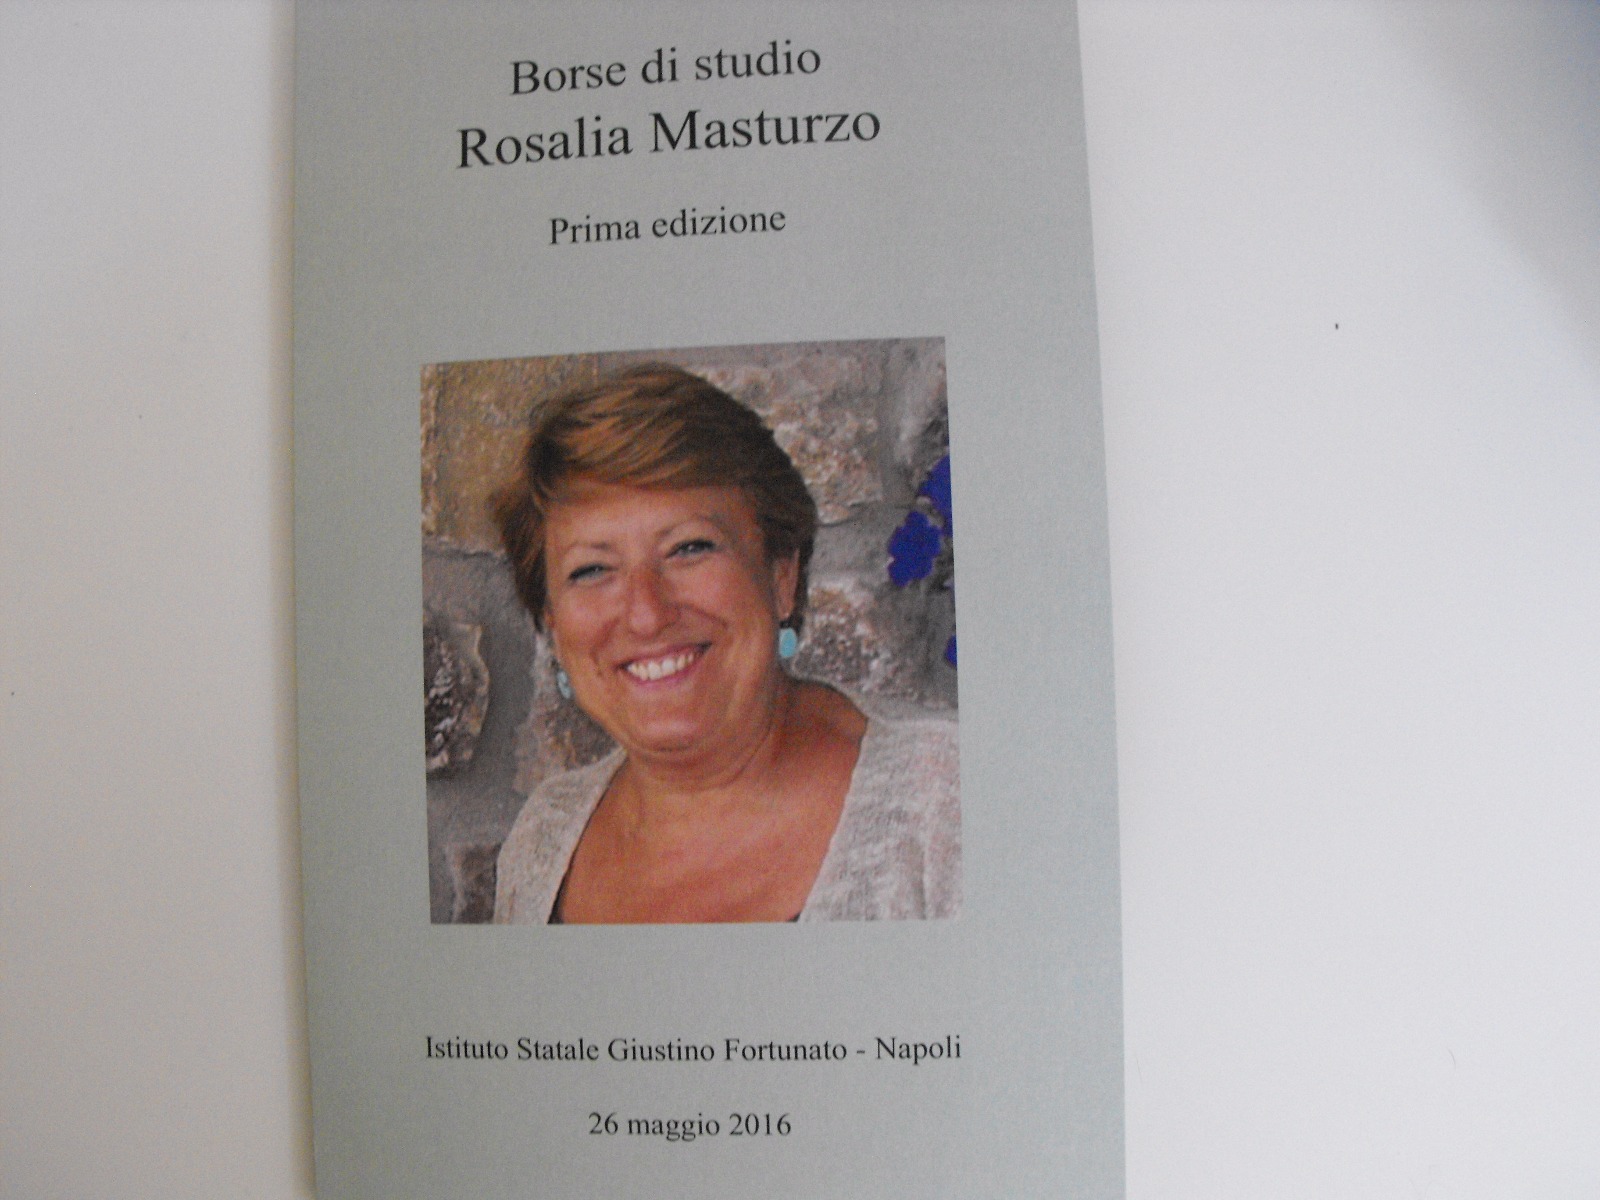 COMUNICAZIONE  N. 13 - Premiazione Borsa di Studio ROSALIA MASTURZO